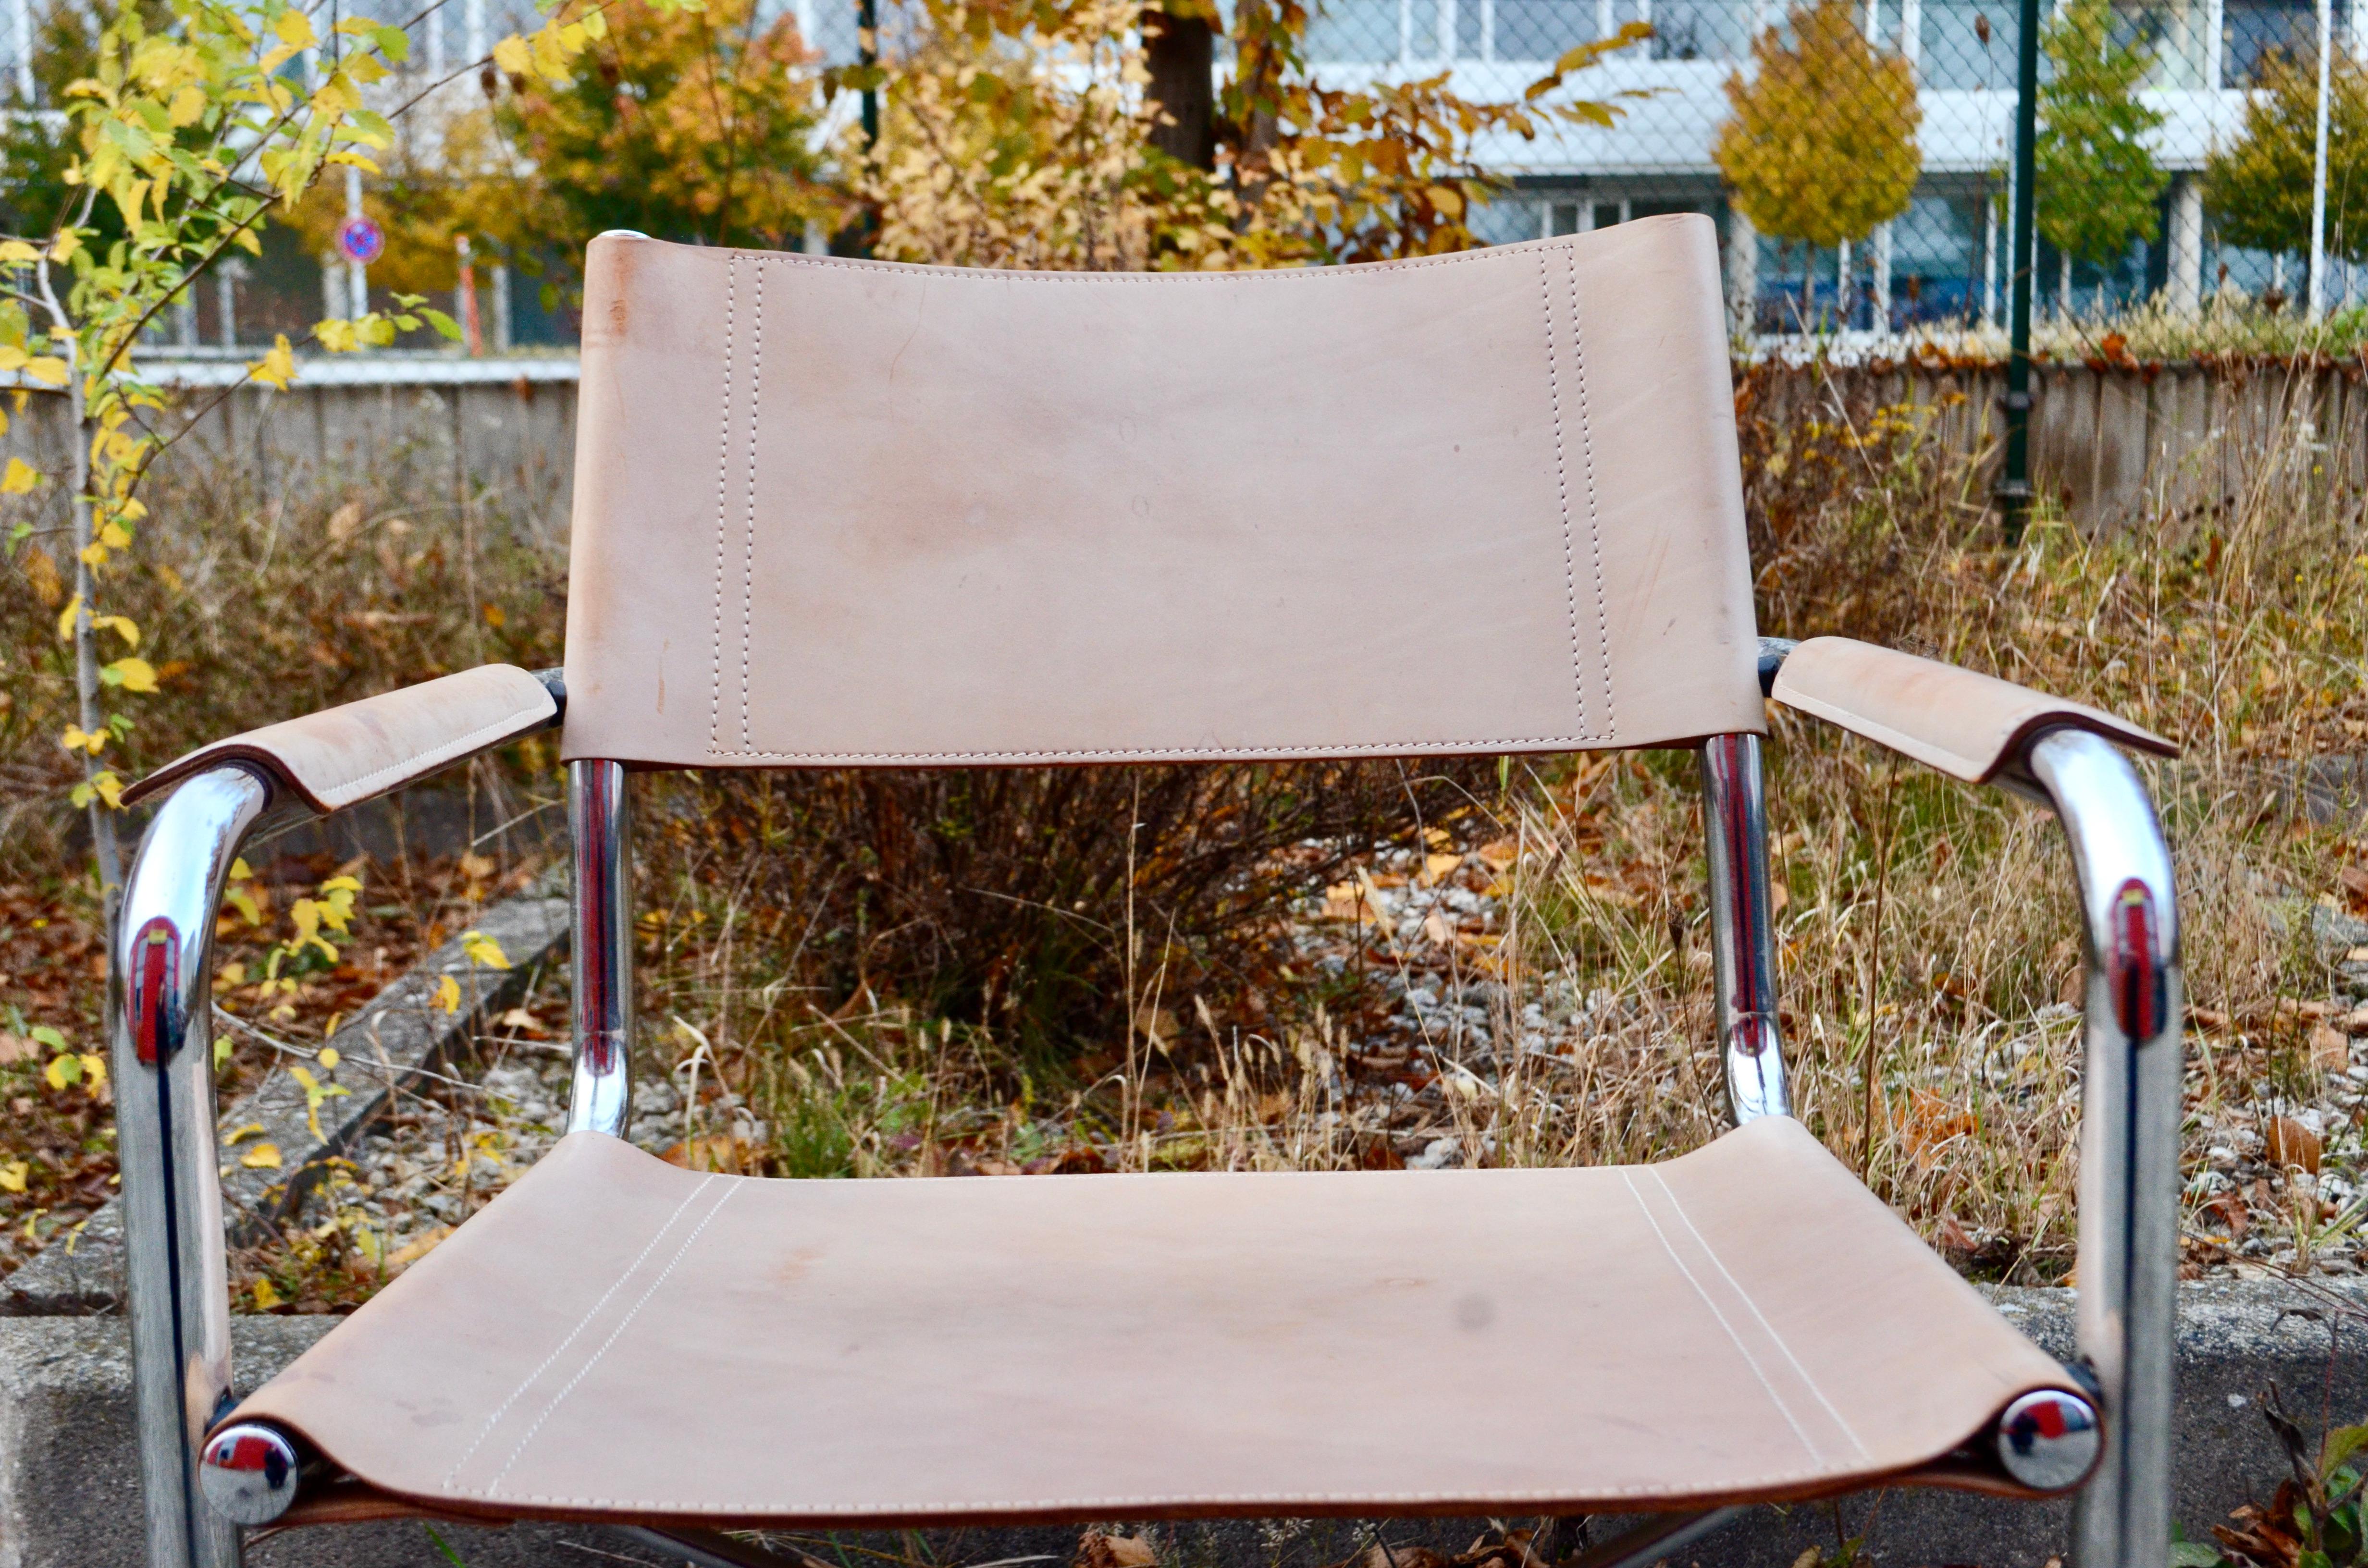 Chaise Cantilever Vintage par Centro Studi pour Matteo Grassi Modell MG.
Cette chaise Cantilever est un classique italien.
À la manière de Marcel Breuer, ces chaises sont fortement inspirées du mouvement Bauhaus.
Il s'agit d'un cuir de selle